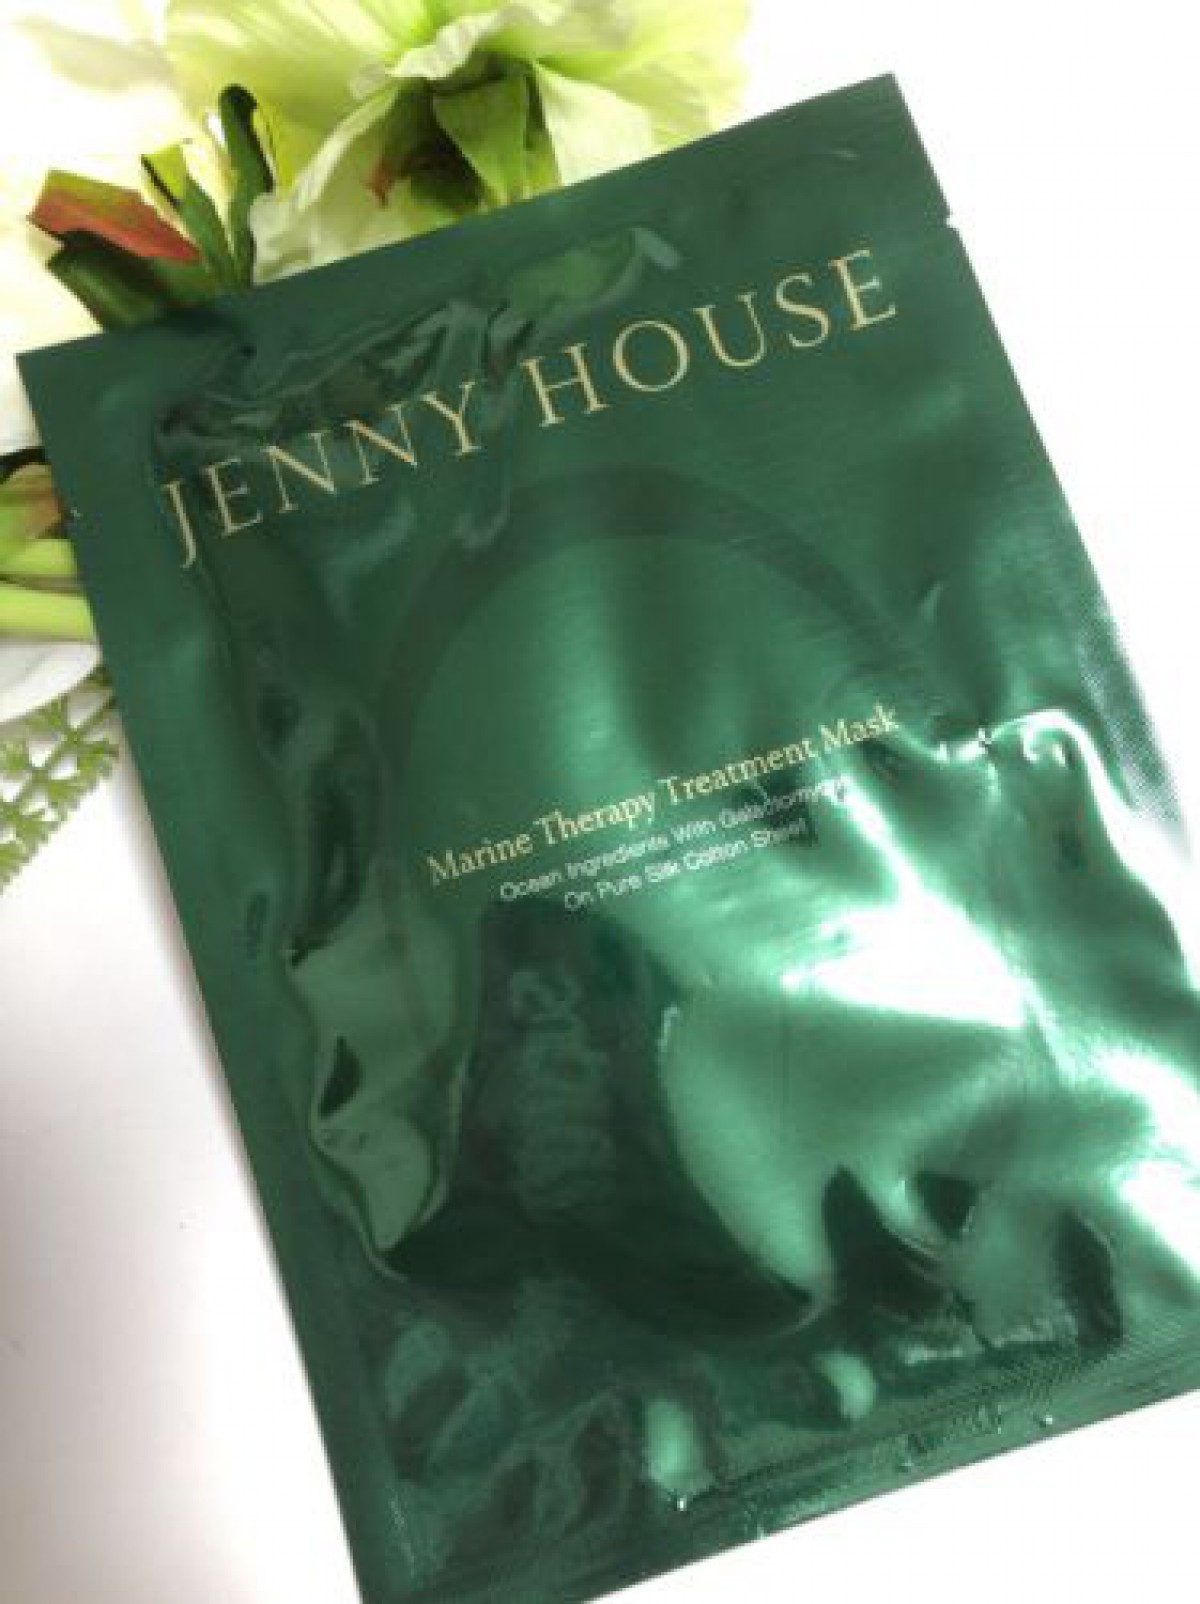 JENNY HOUSEのシートマスクを使ってみました♪